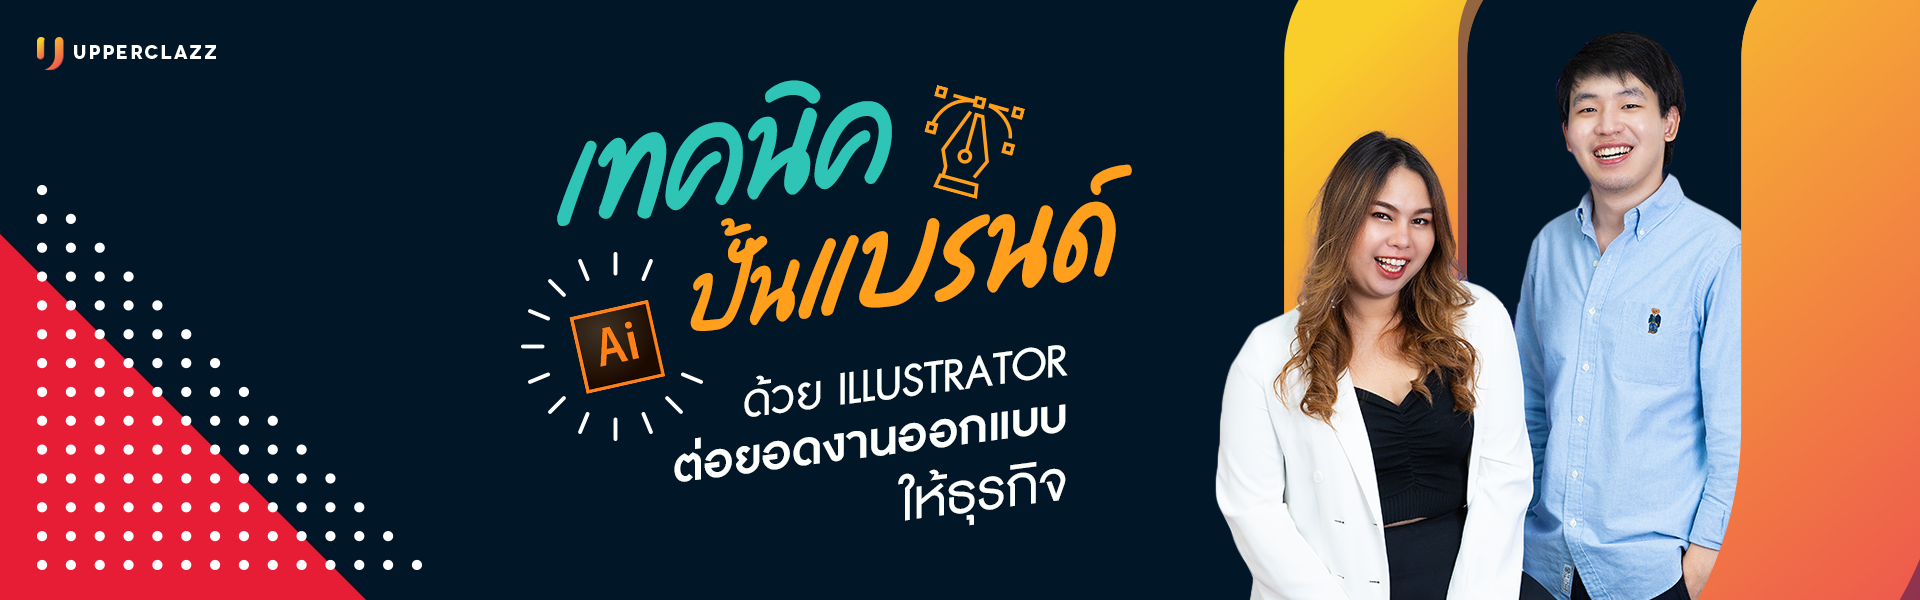 สอนทำกราฟิกด้วย Adobe Illustrator จากมือใหม่ให้เป็นมืออาชีพ